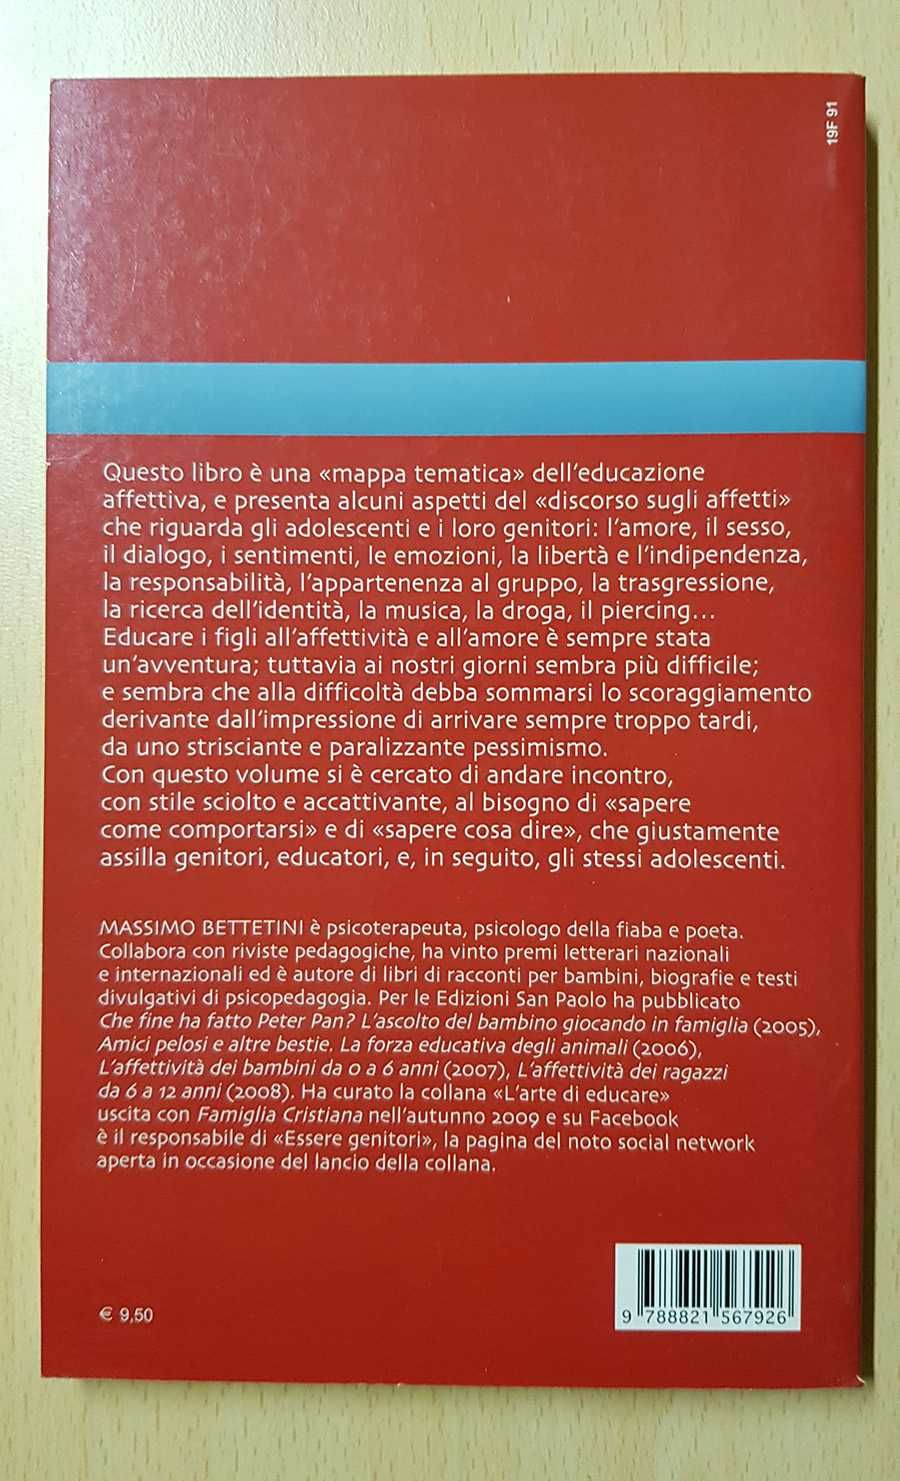 L'affettività degli adolescenti - książka dla młodzieży w jęz. włoskim